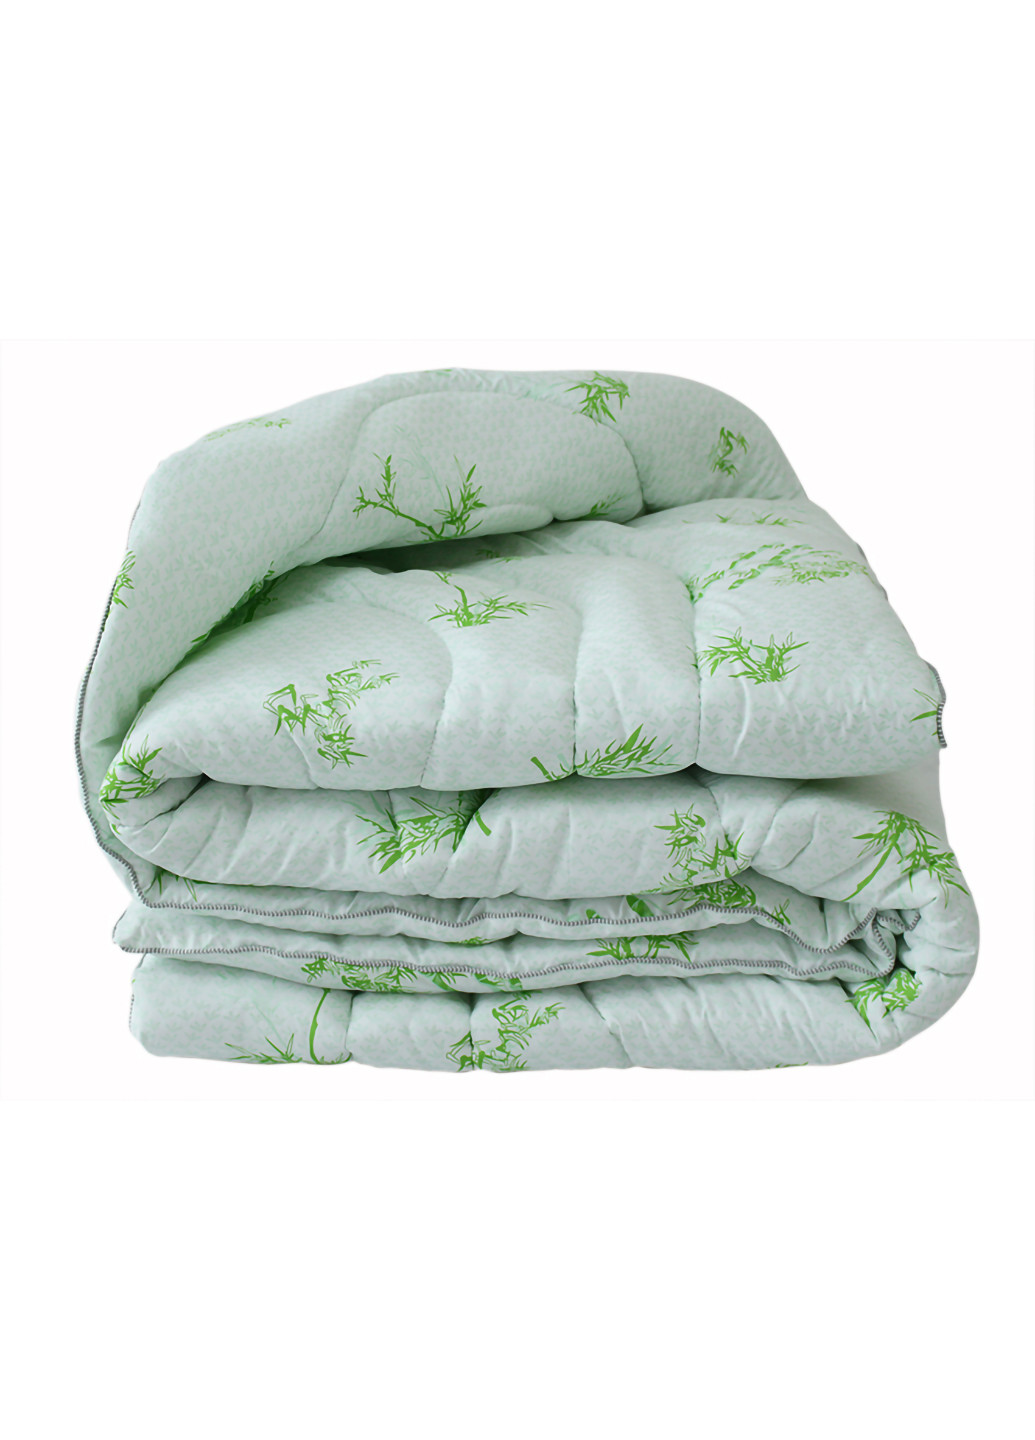 Комплект одеяло лебяжий пух Bamboo white 2-сп. + 2 подушки 50х70 см Tag (254805575)